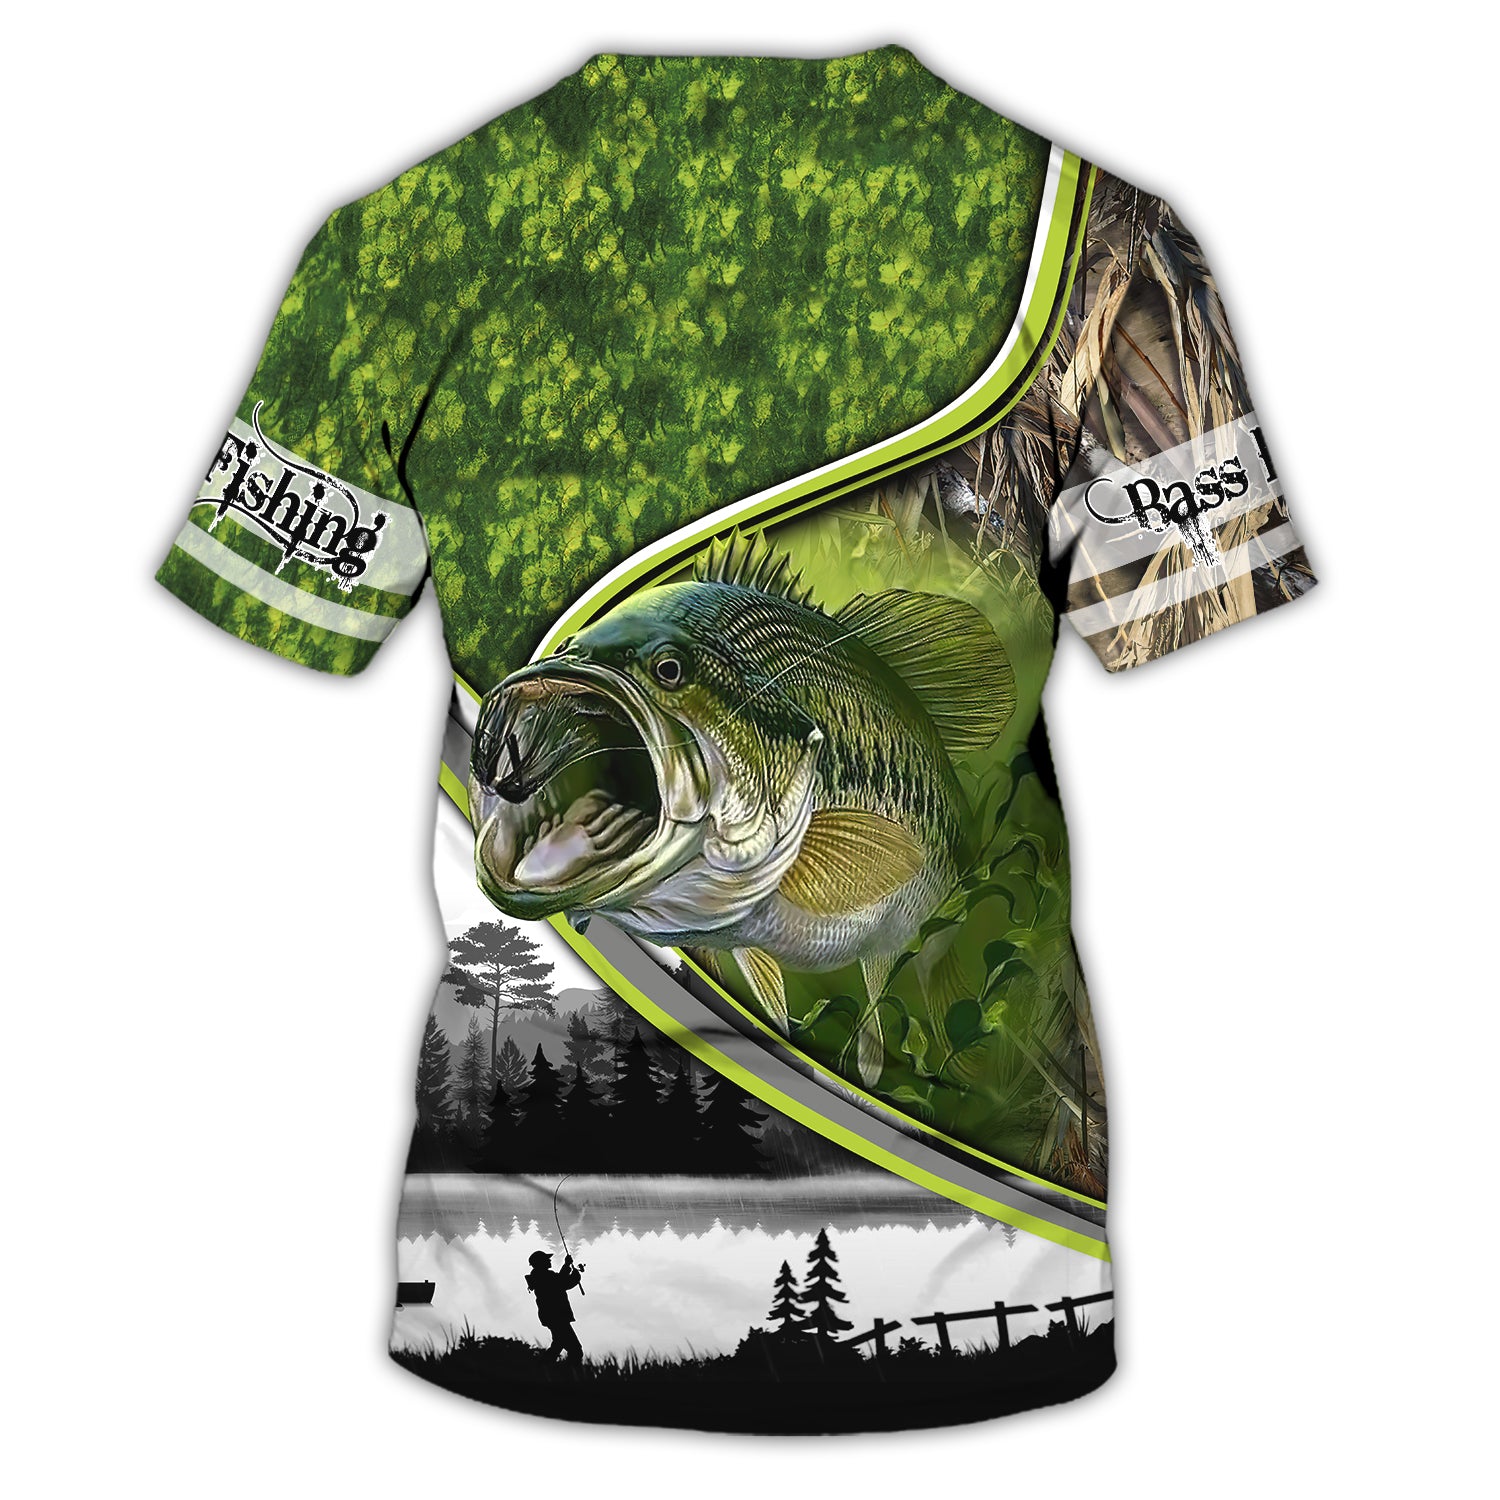 Fishermans Bass Fishing - Personalized Name 3D Tshirt - QB95